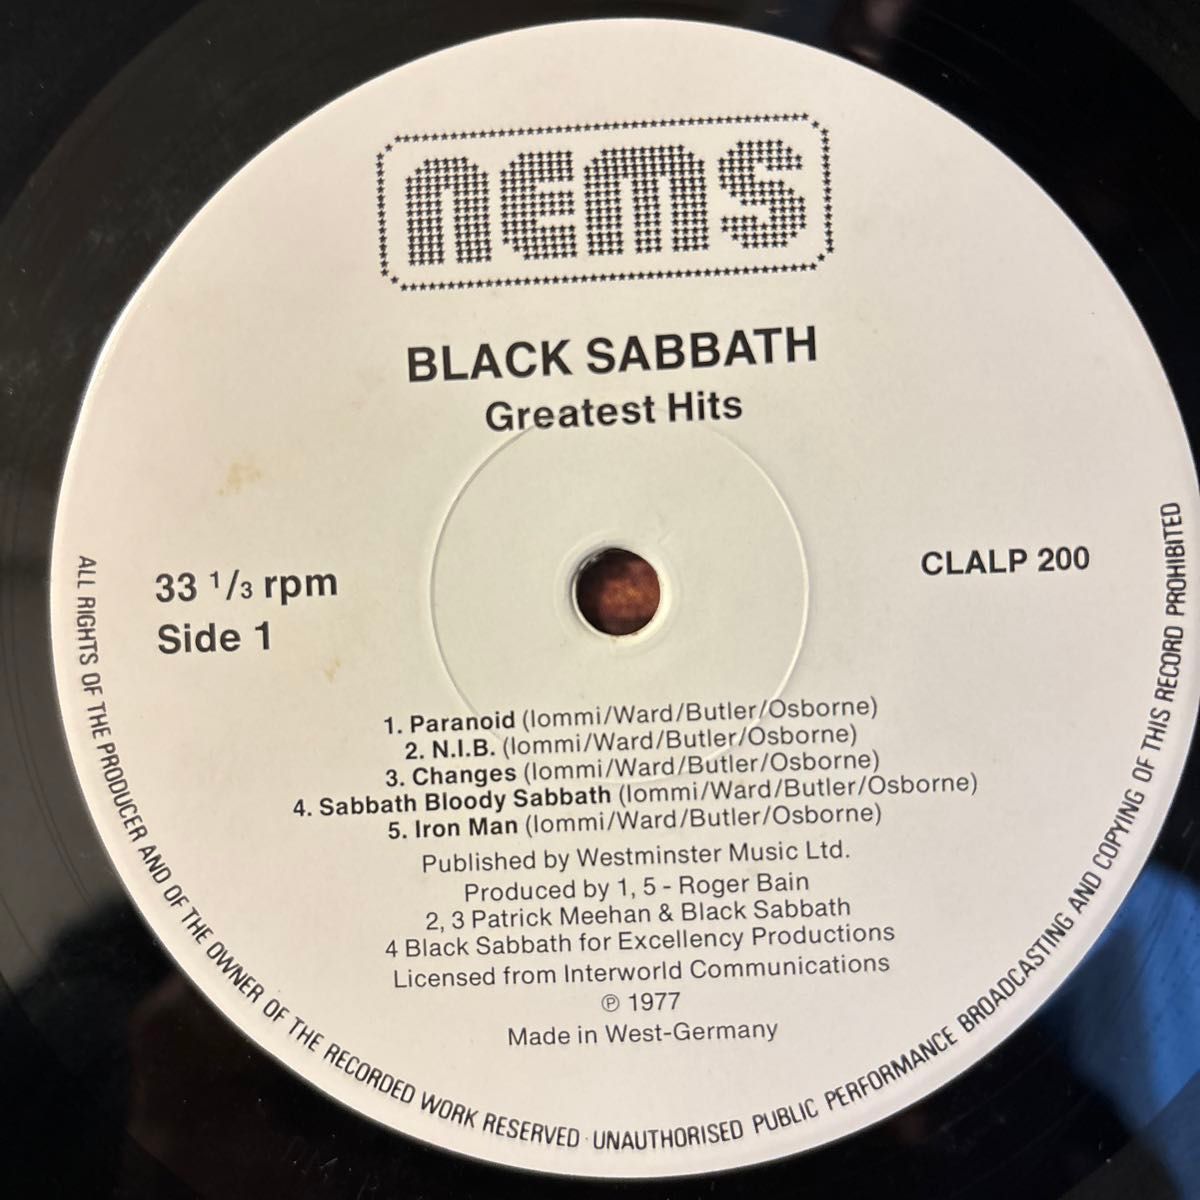 Black Sabbath Greatest Hits レコード LP アナログ ブラック・サバス グレイテスト・ヒッツ best